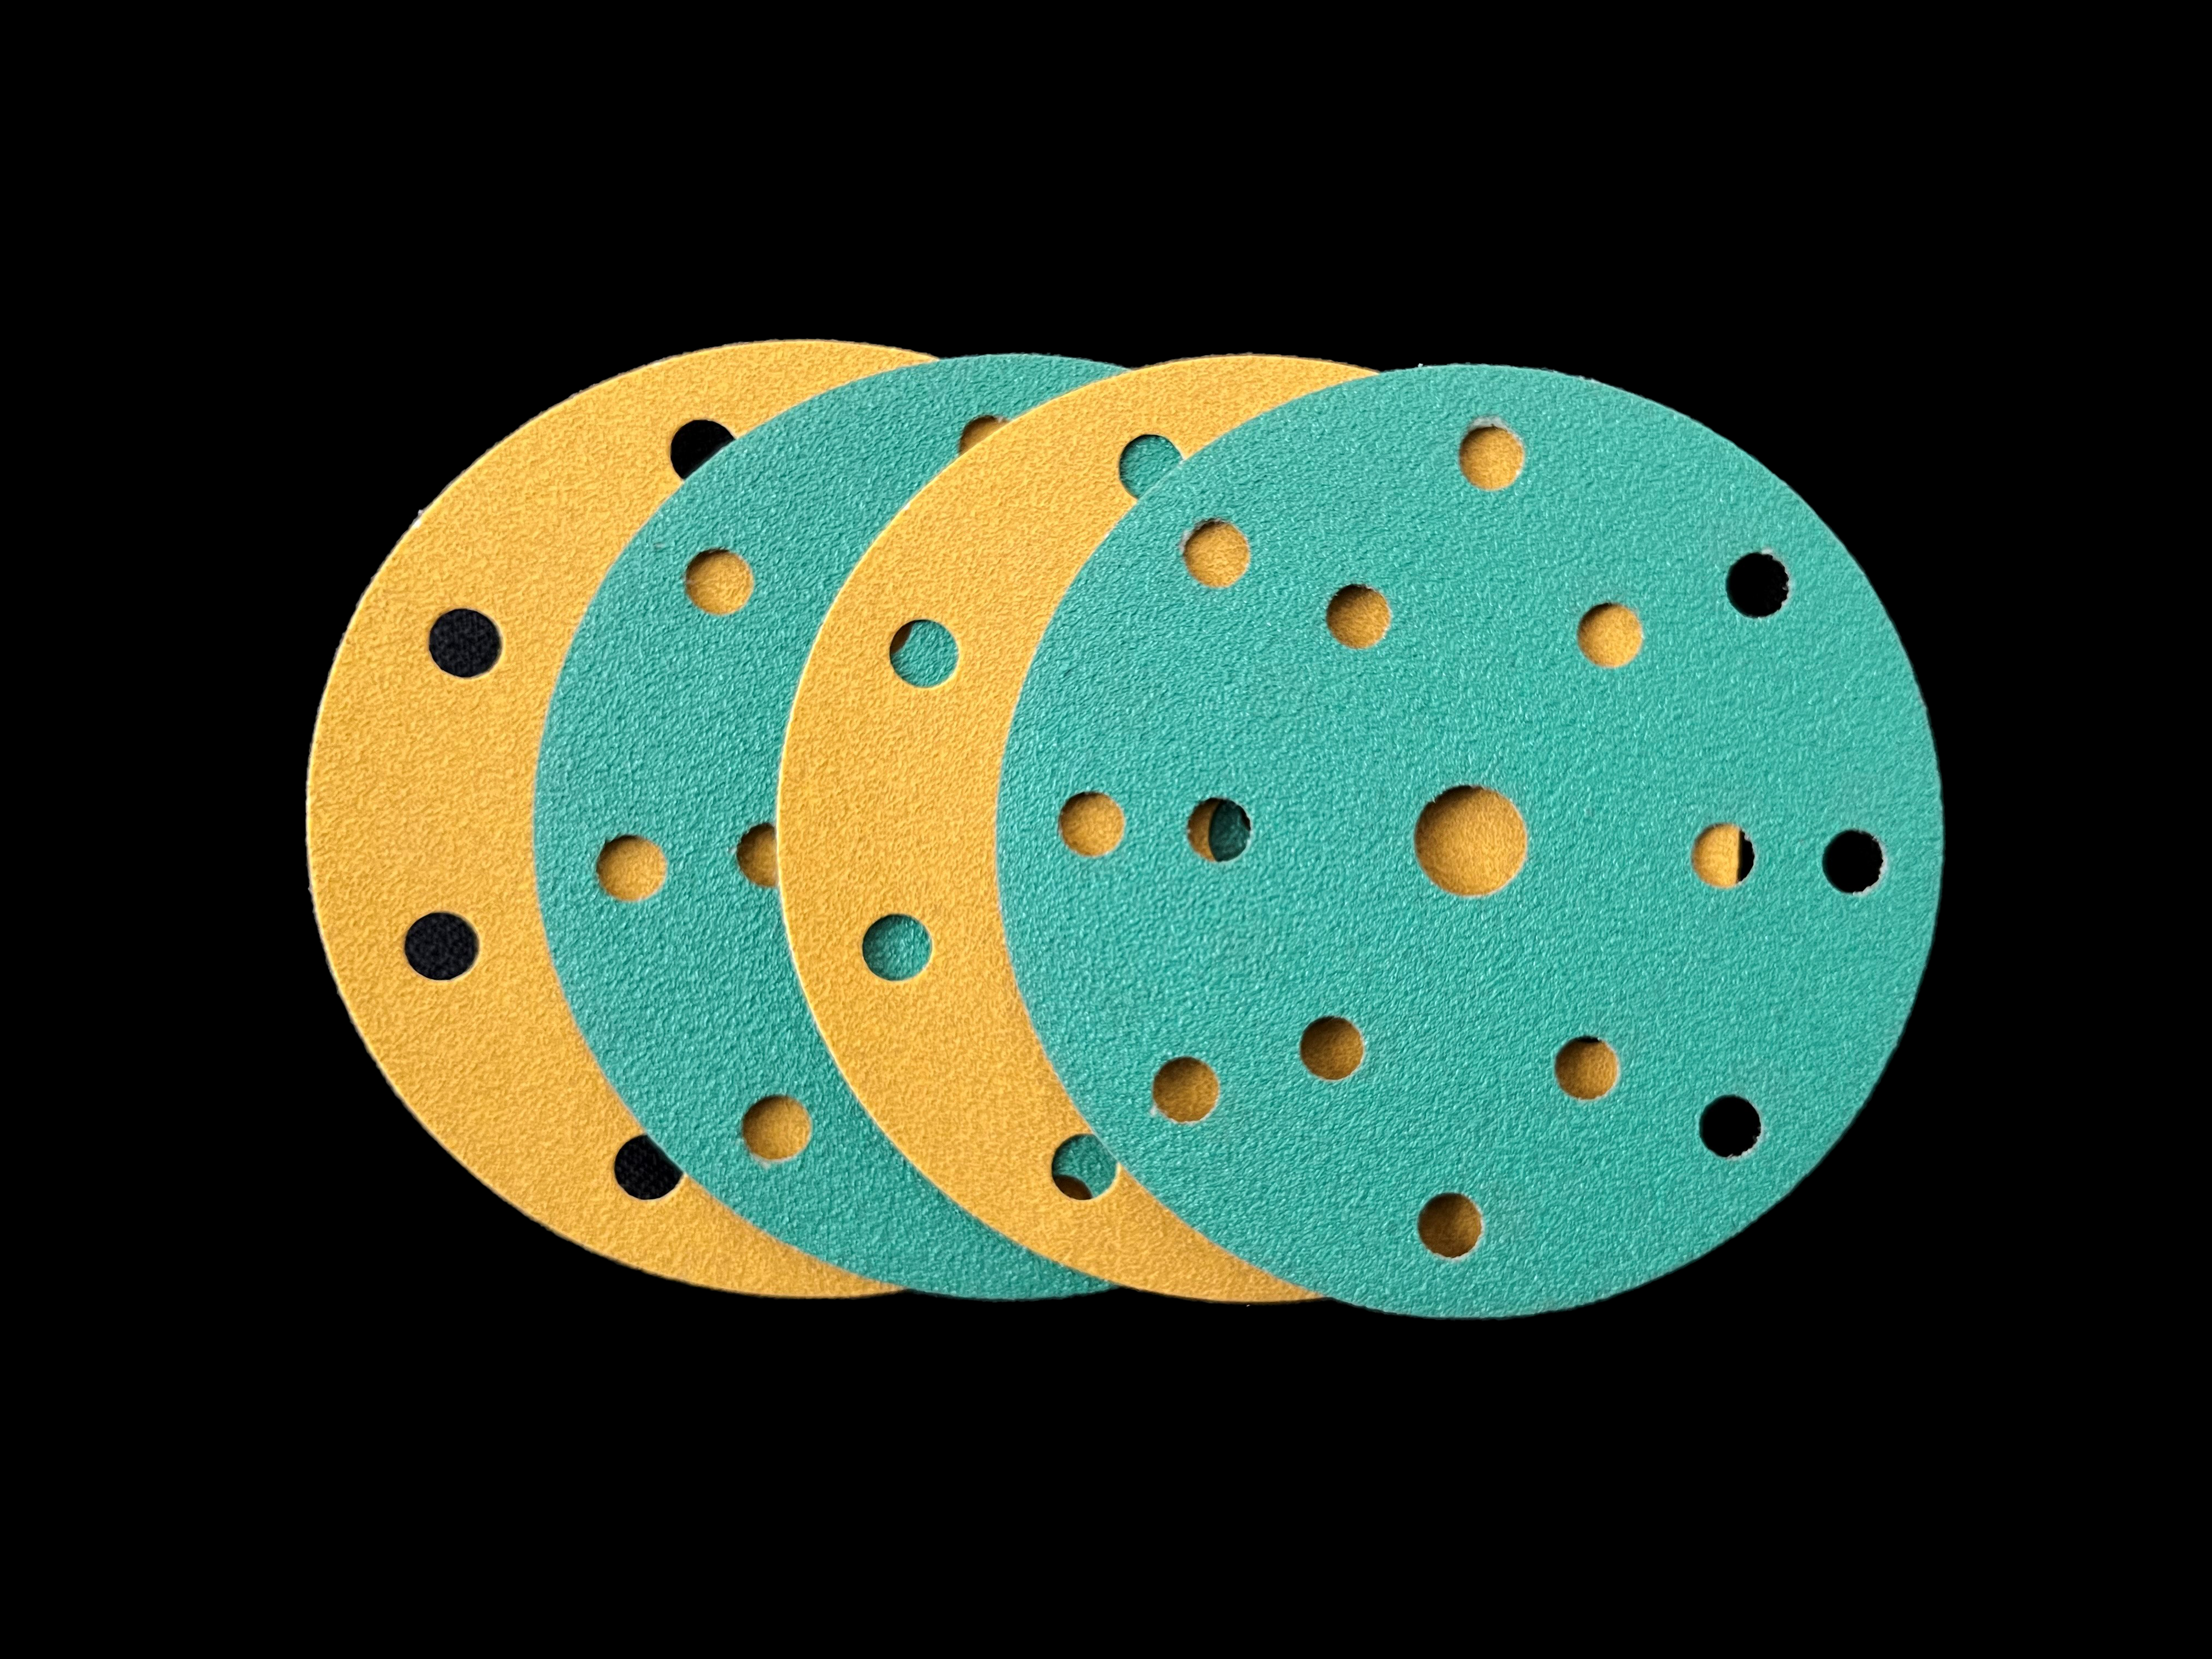 Sandpaper discs